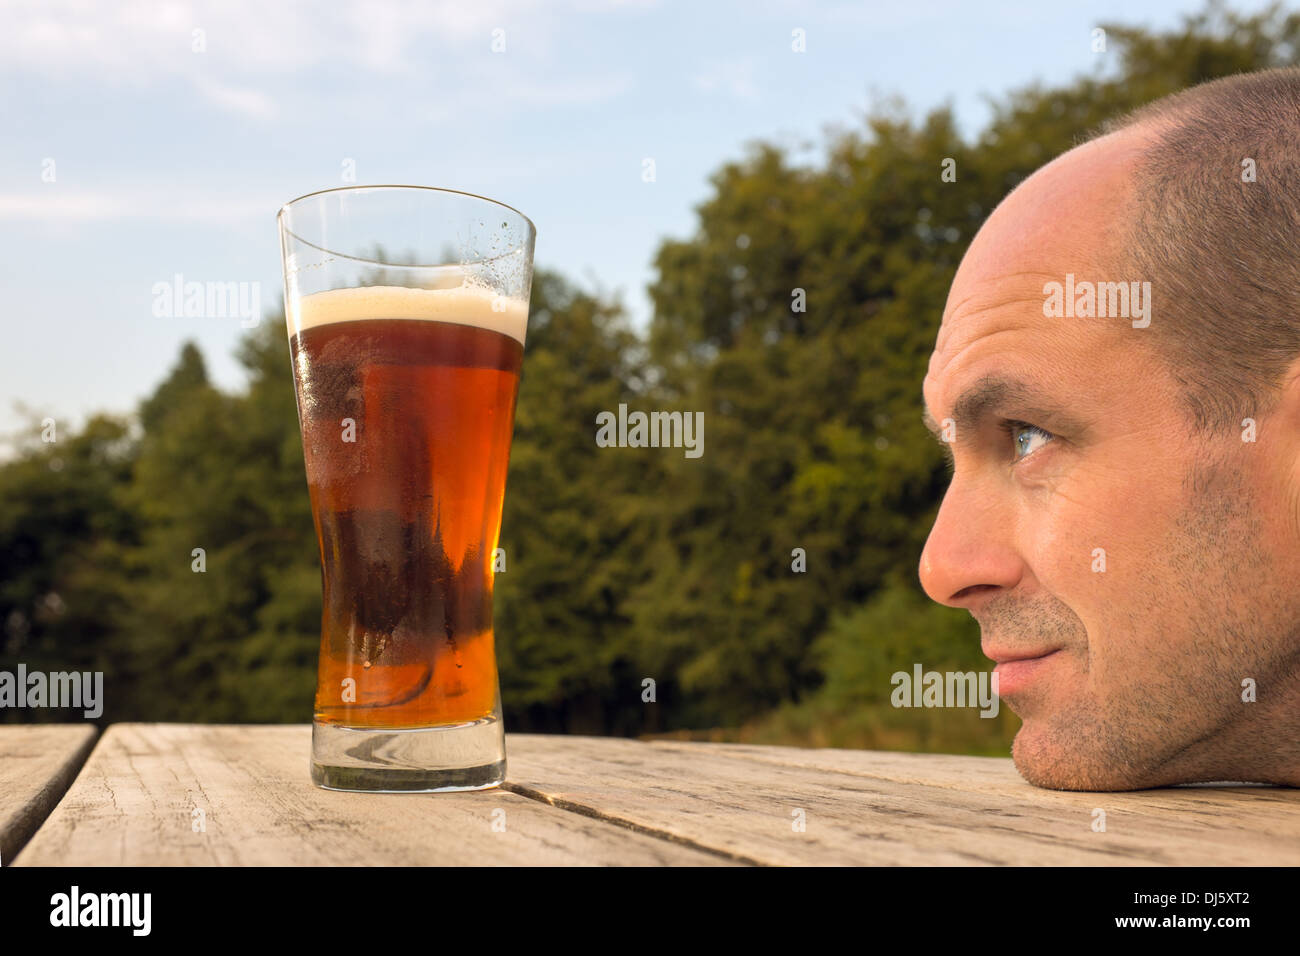 Ein Mann sucht sehnsüchtig auf ein Glas Bier Stockfotografie - Alamy